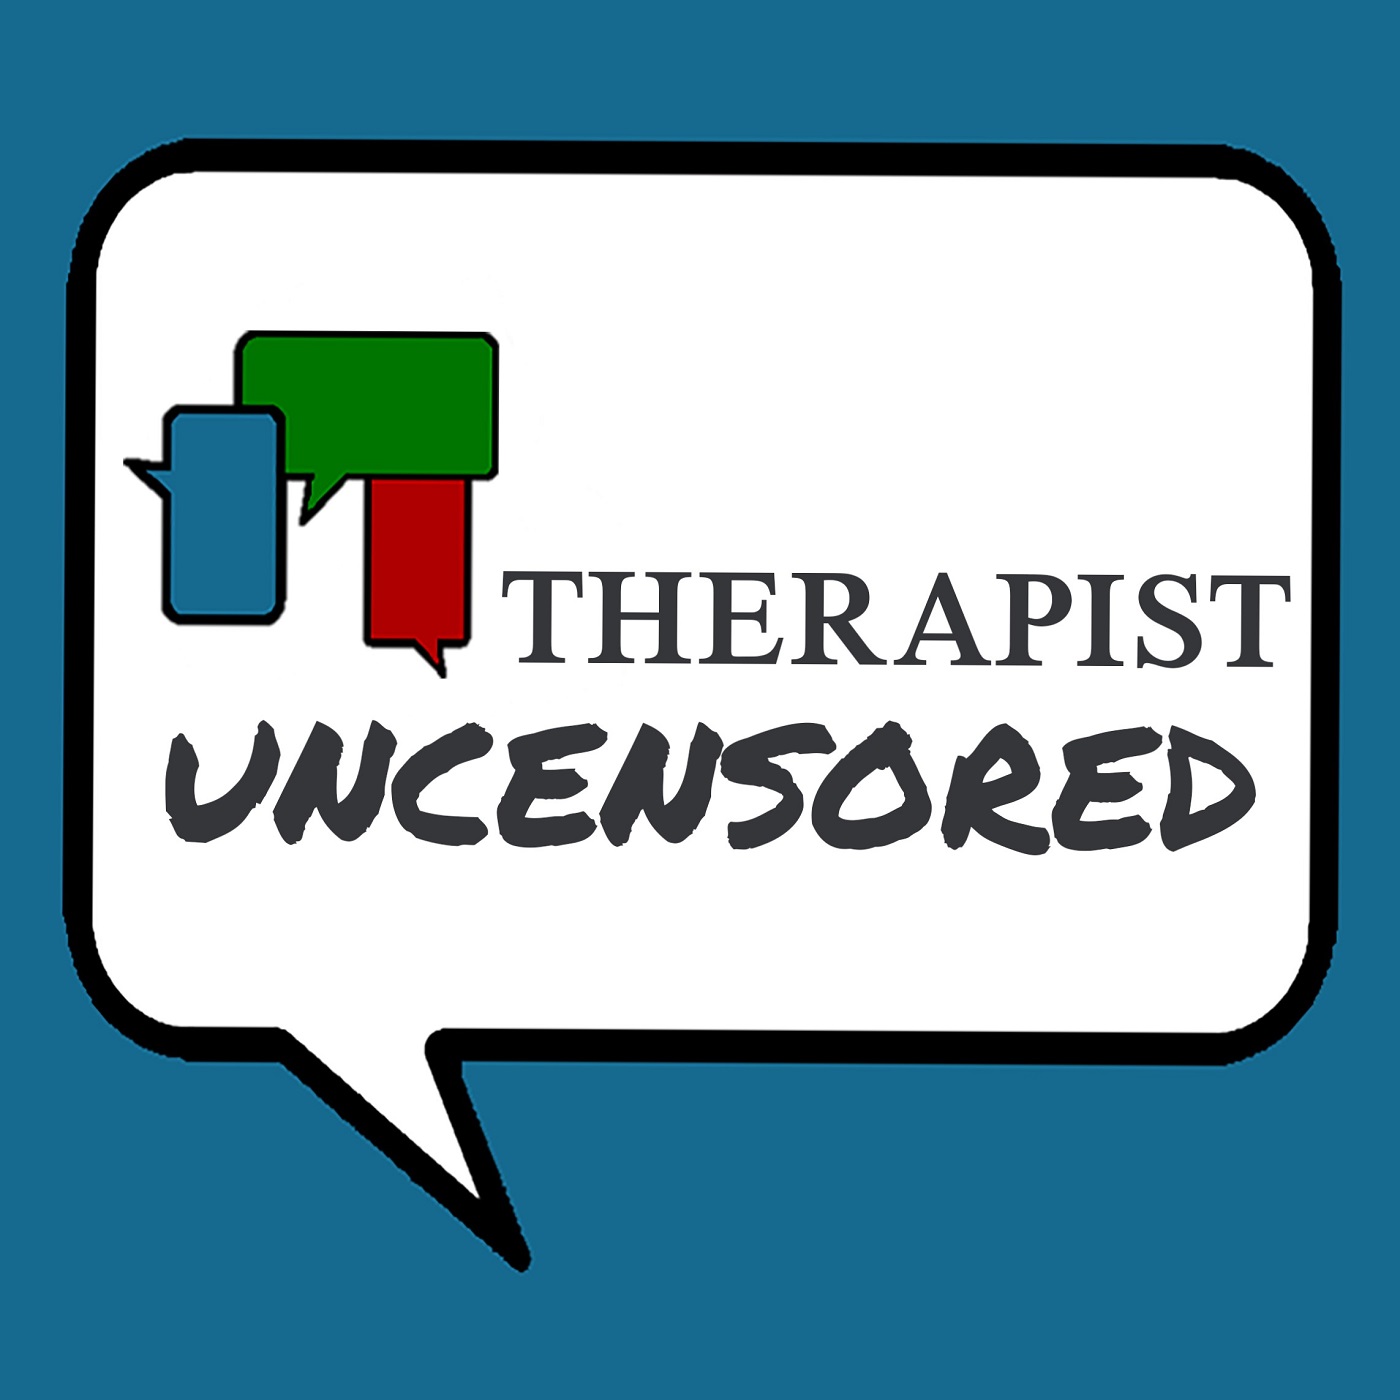 Home Therapist Uncensored - 